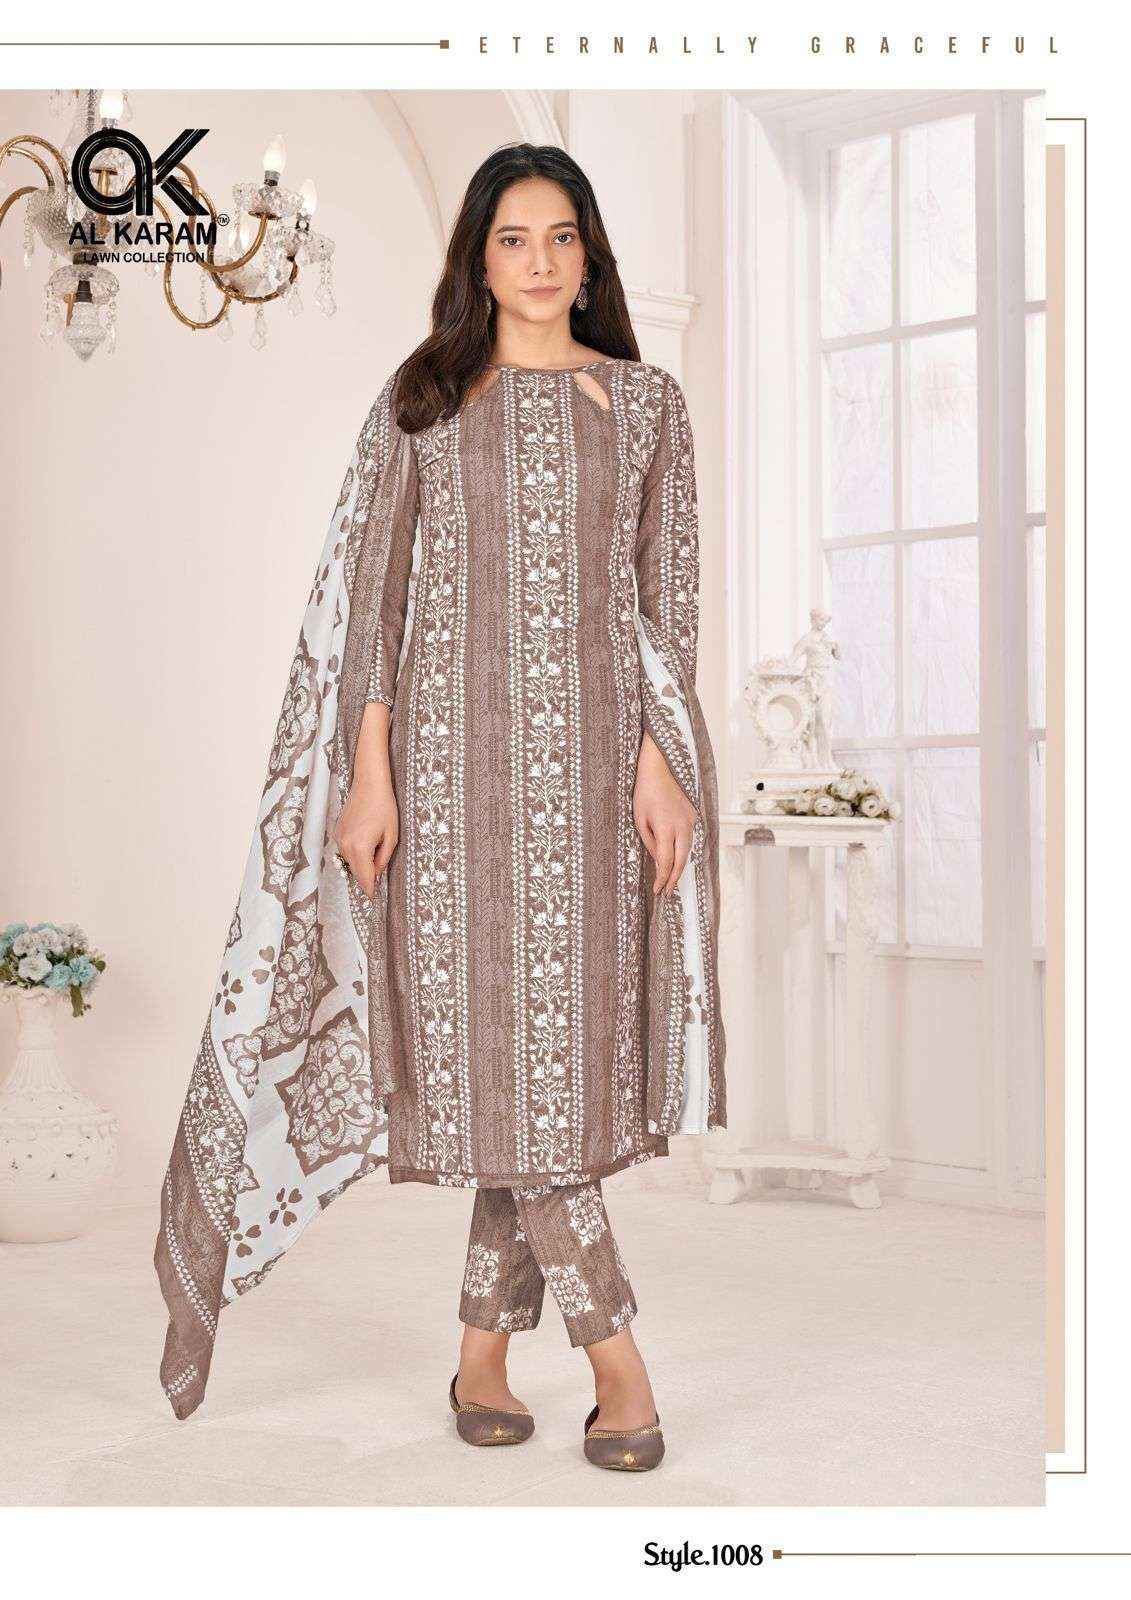 Al Karam Tamanna Signature Print Cotton Dress Material 10 pcs Catalogue